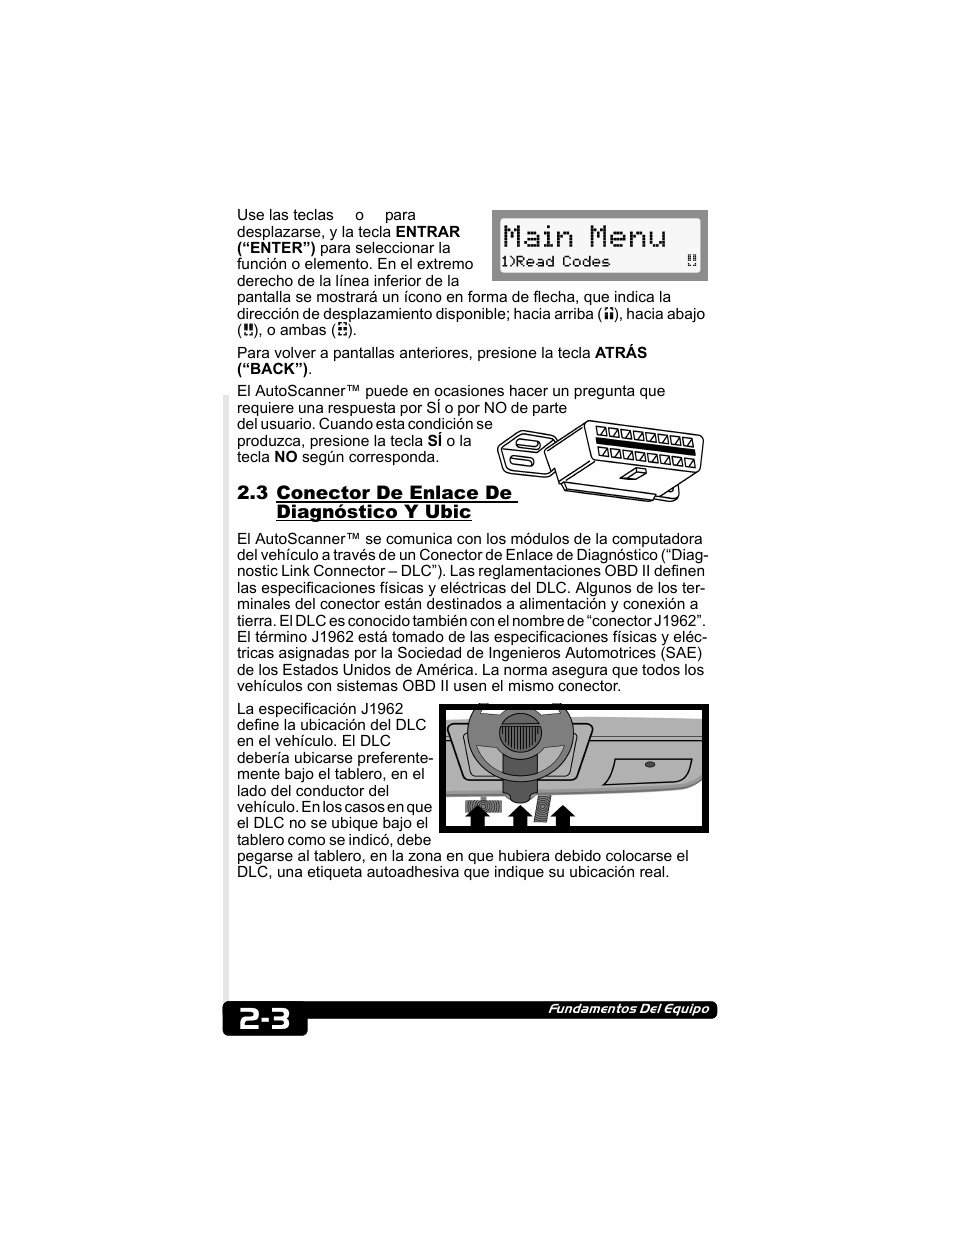 ACTRON CP9135 MANUAL PDF